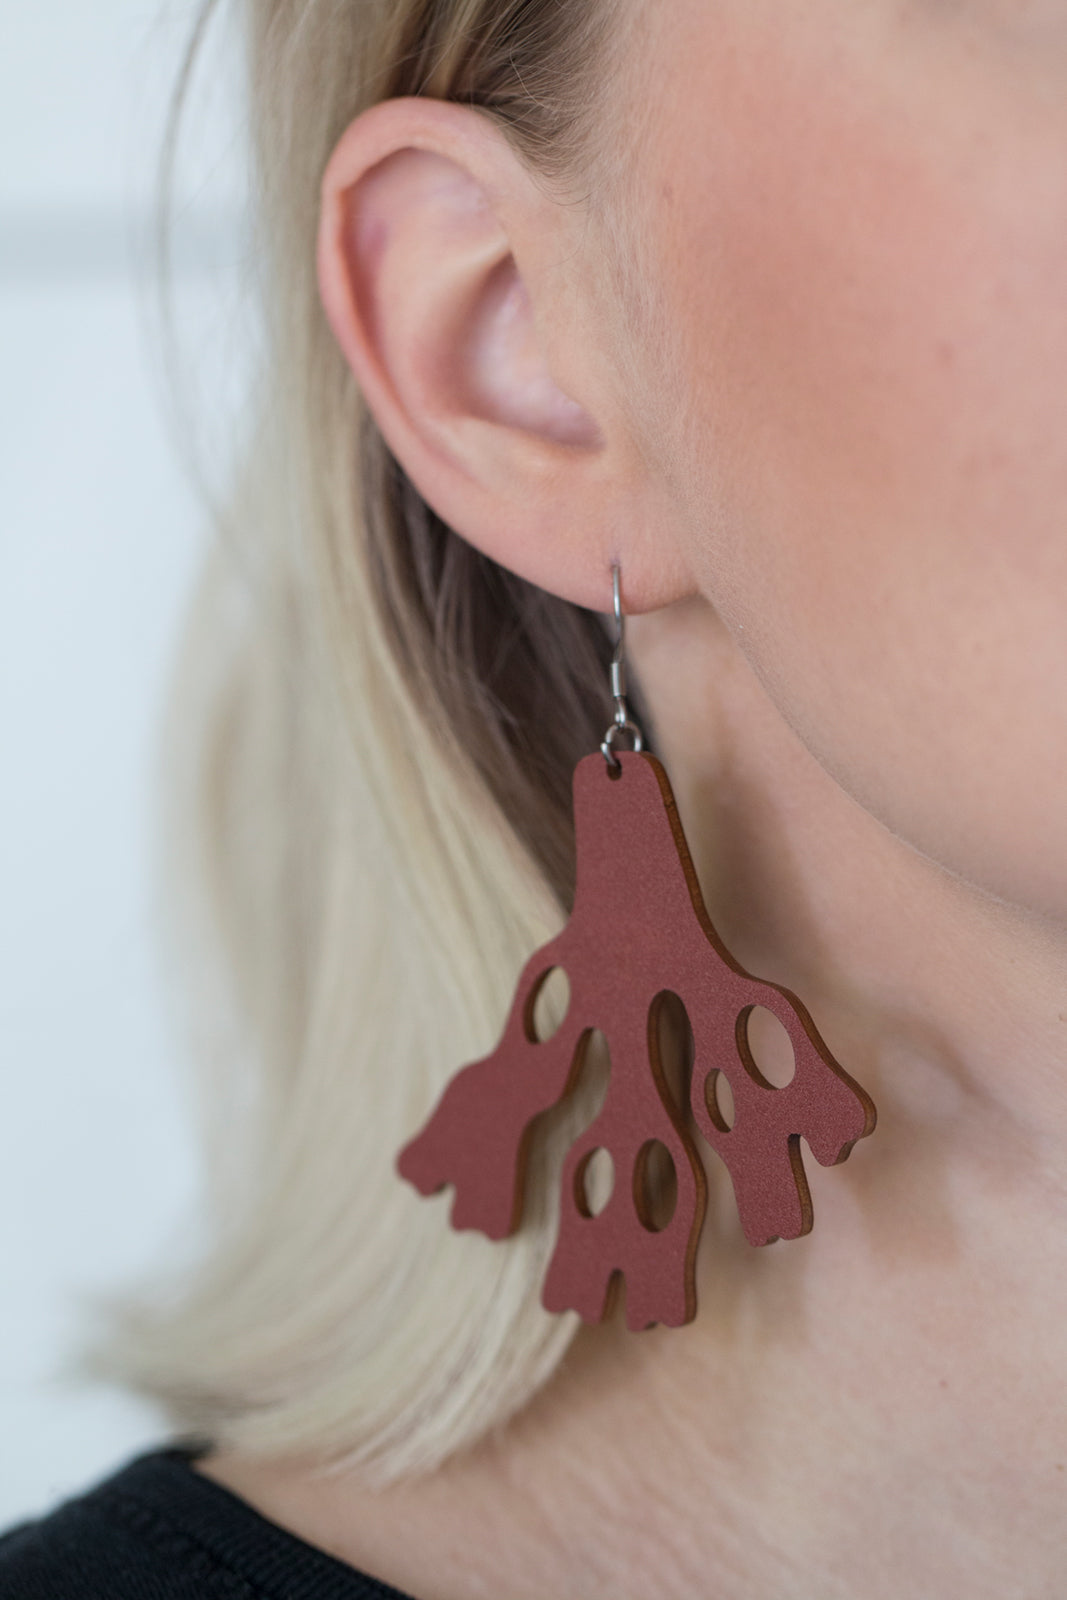 Meri earrings in use